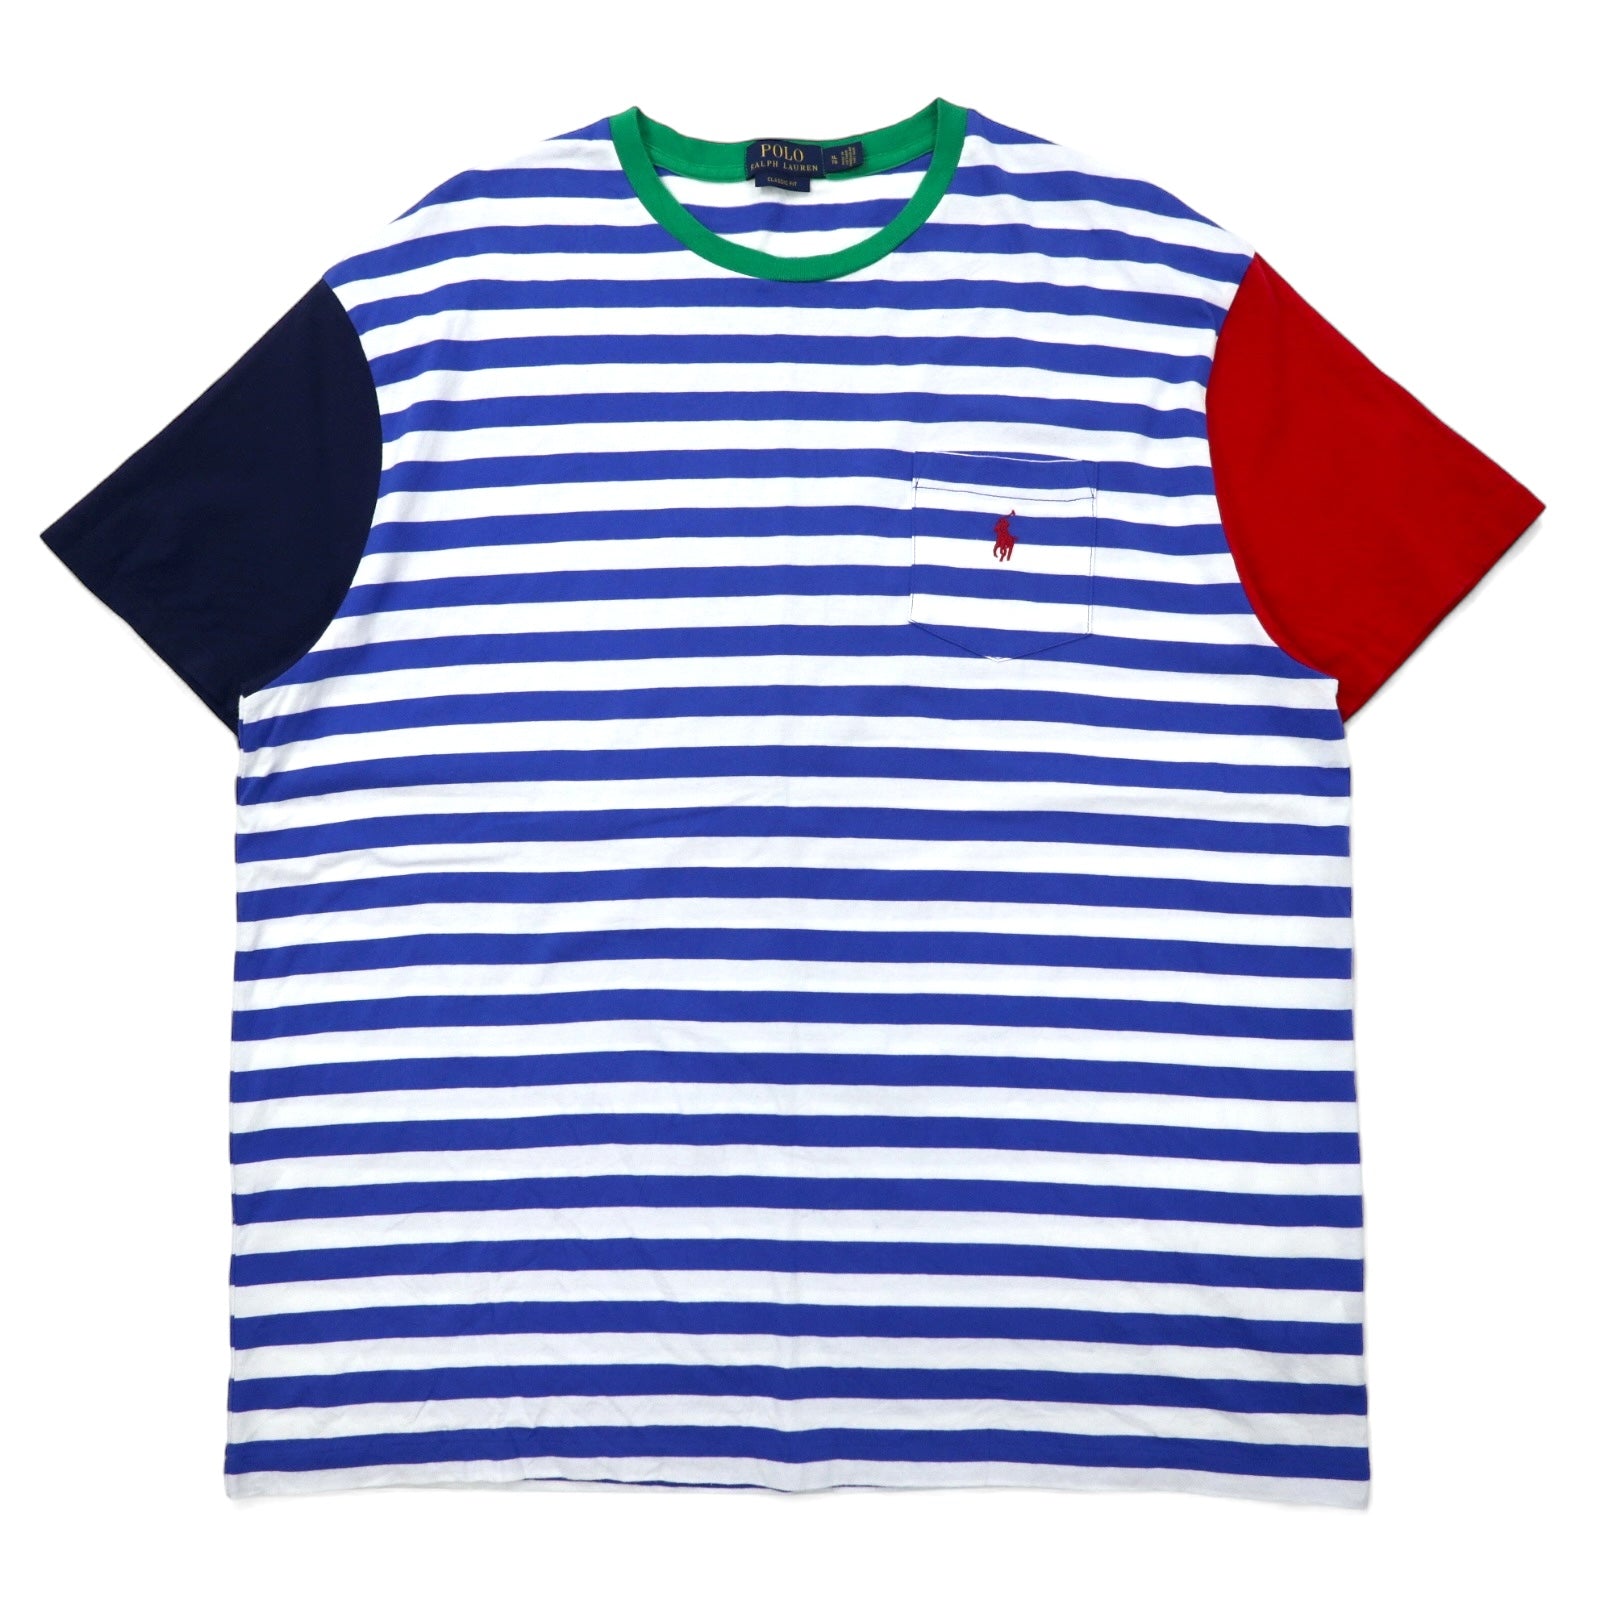 POLO RALPH LAUREN クラシックフィット ボーダー Tシャツ ポケT XL ブルー ホワイト コットン カラーブロック スモールポニー刺繍